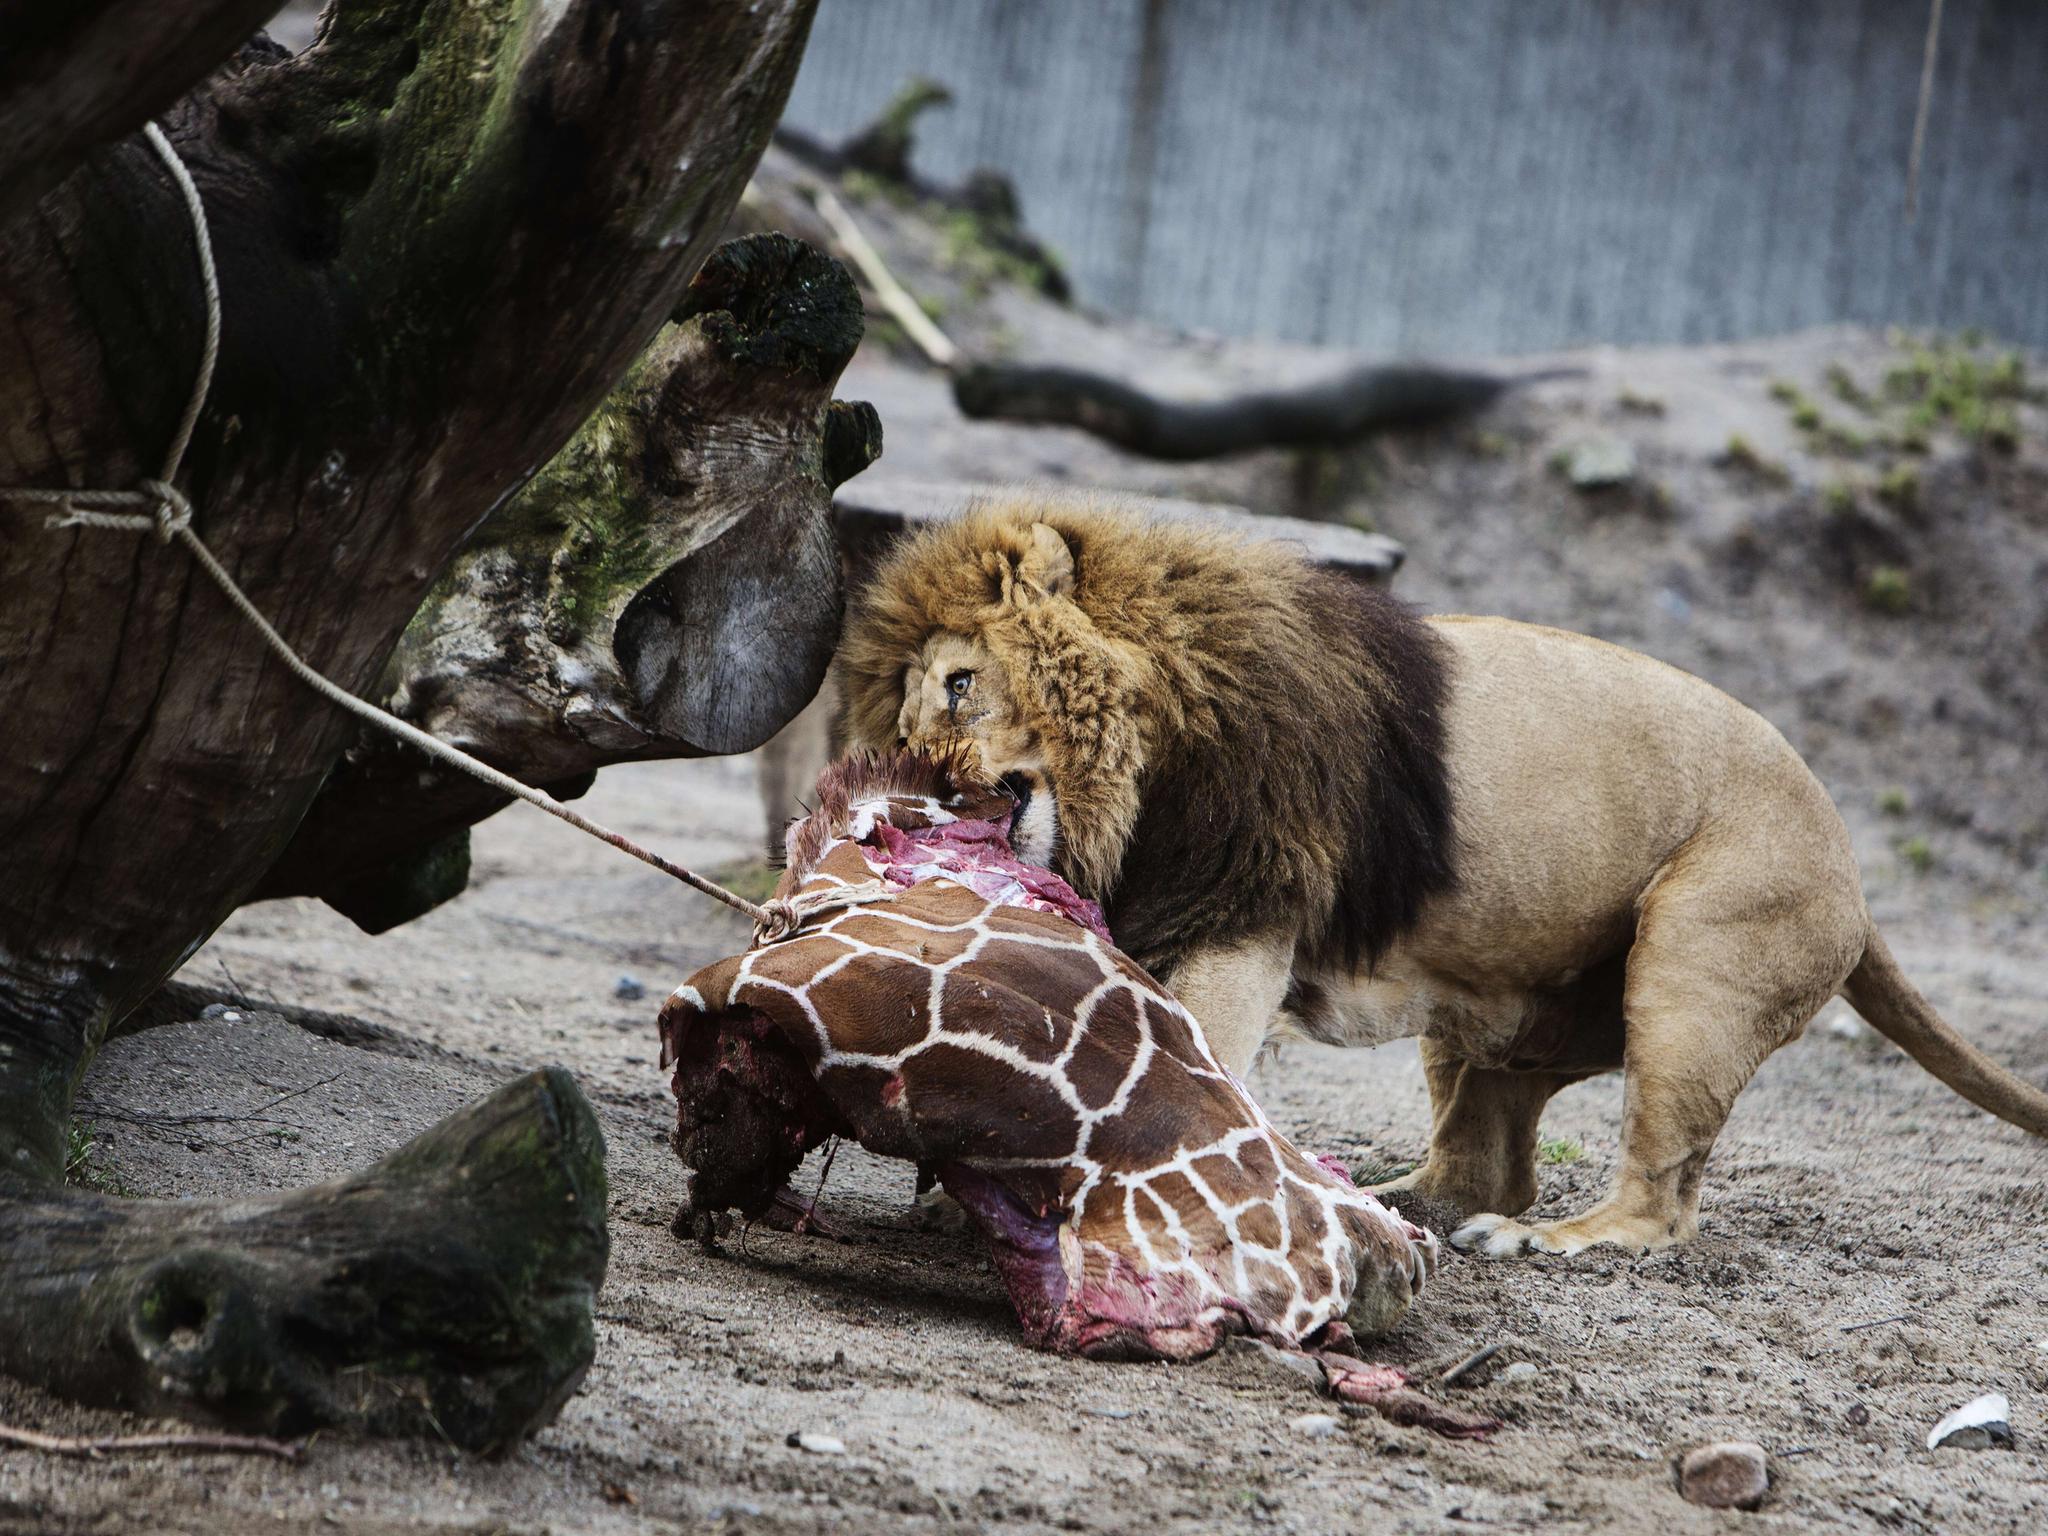 Zoo-Besuch wieder ohne Online-Reservierung möglich - Erdmännchen-Nachwuchs  im Giraffenhaus